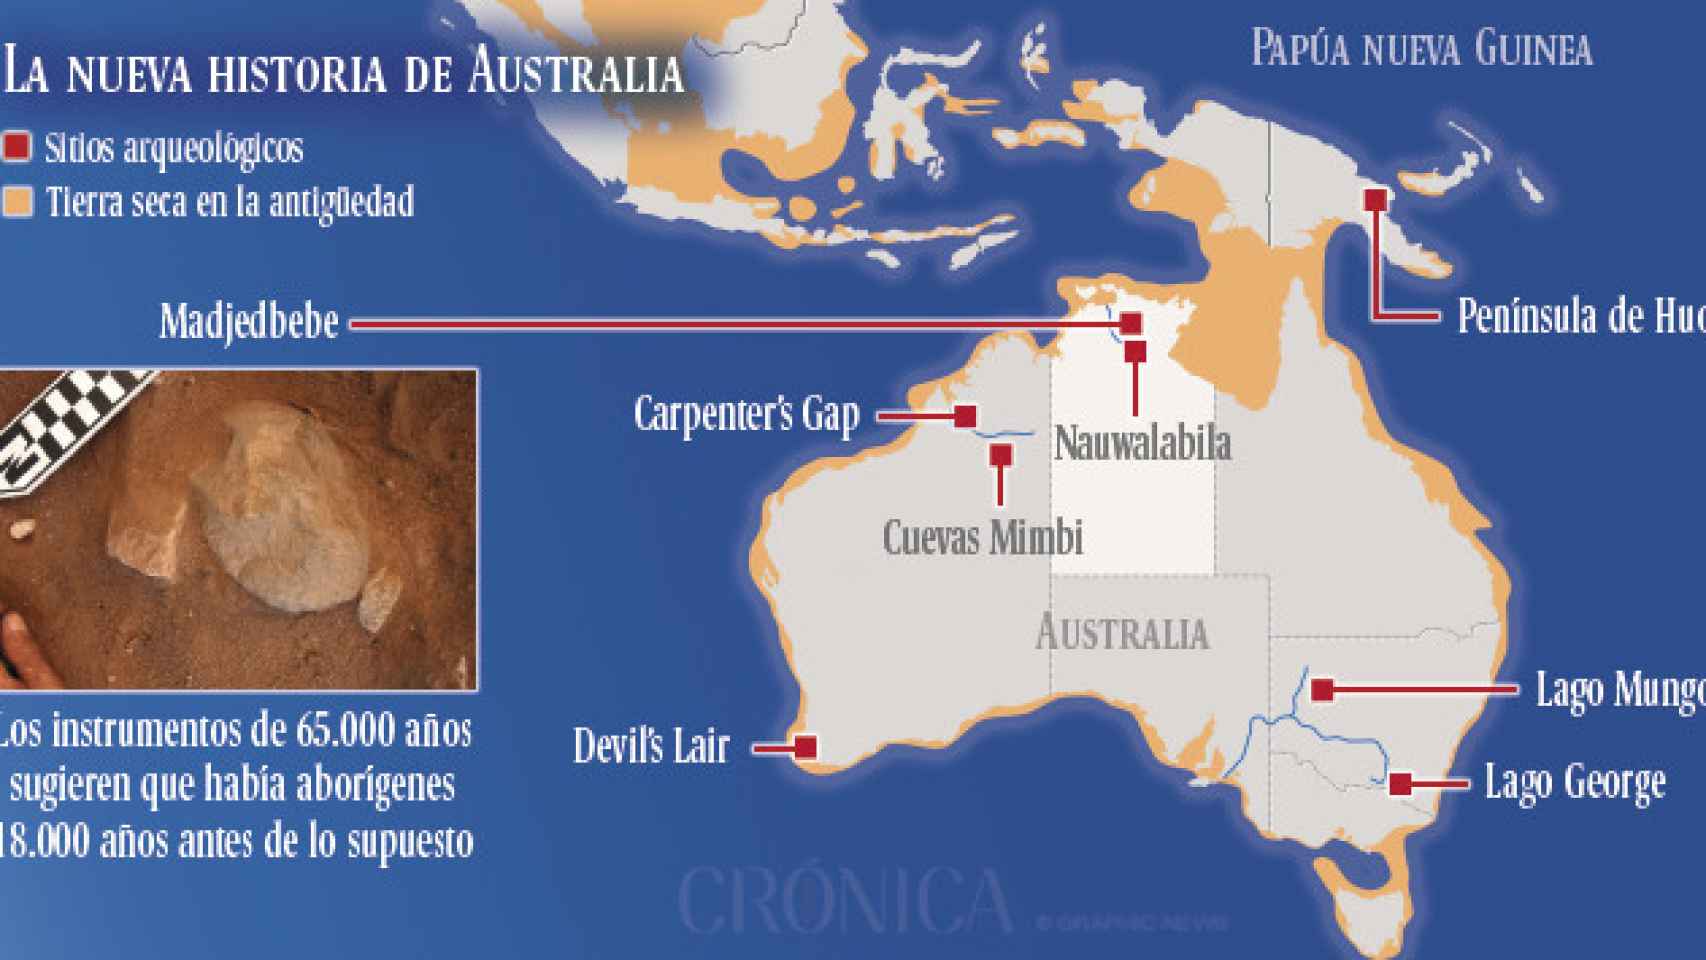 Los humanos llegaron a Australia hace 65.000 años